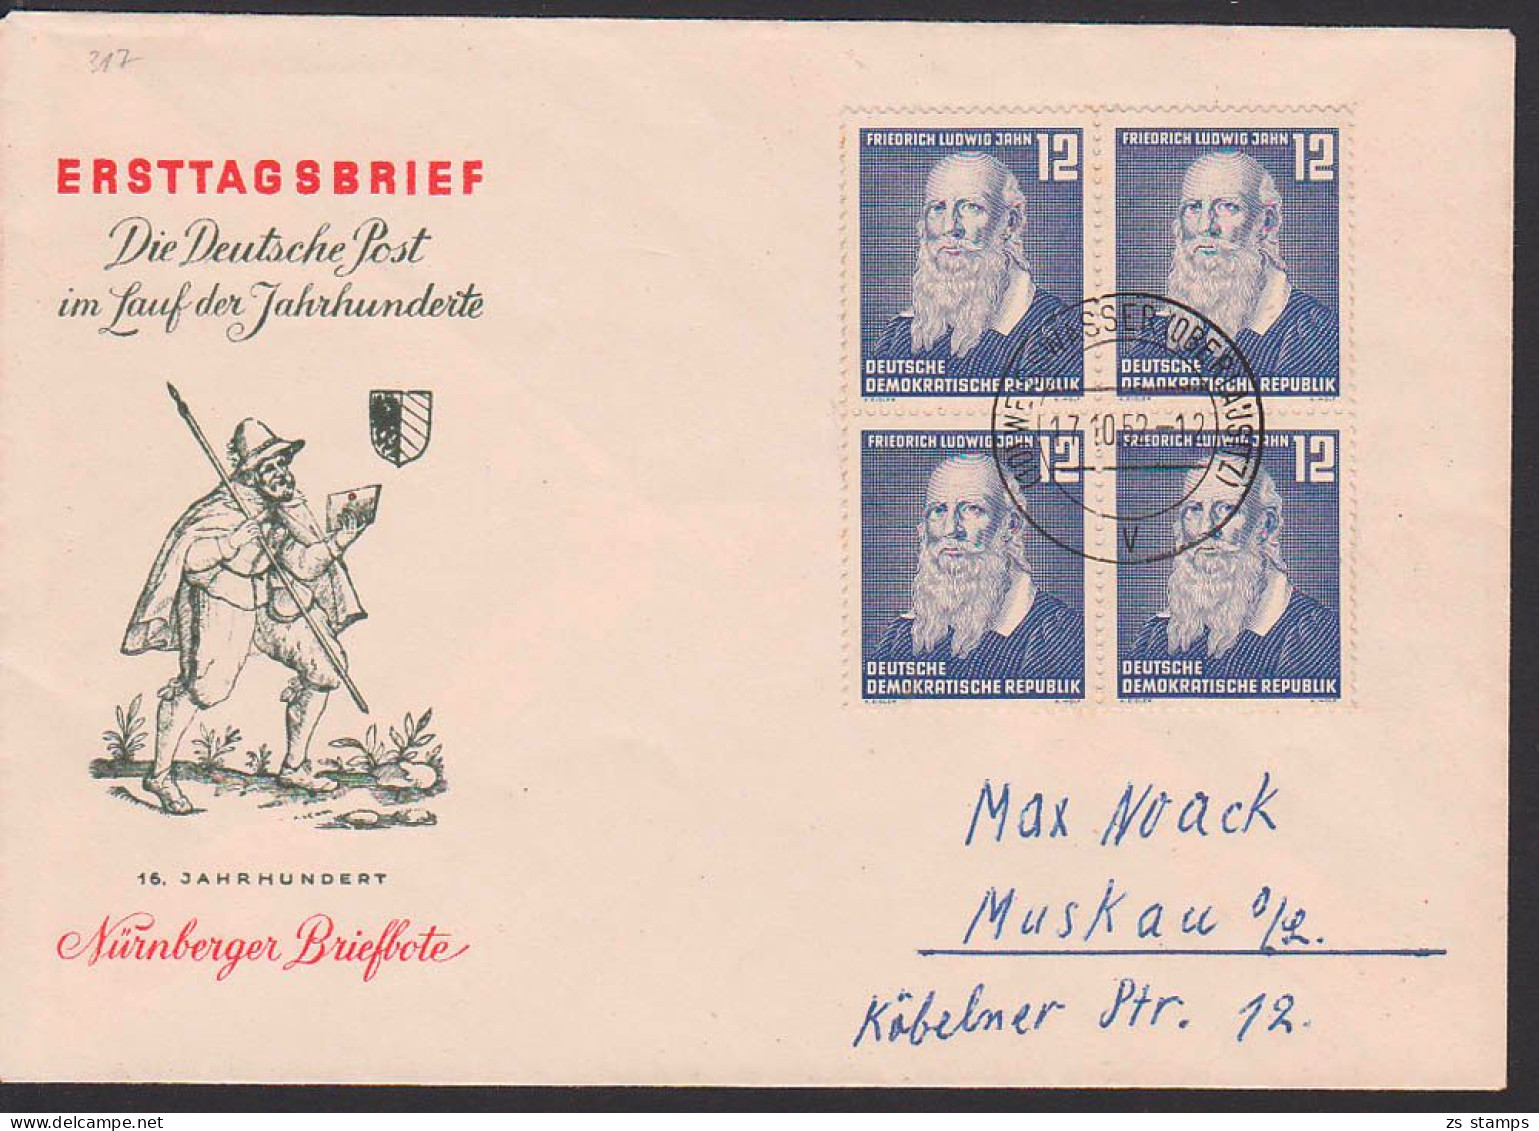 Weissswasser (Oberlausitz) 17.10.52 12 Pfg. Friedrich Ludwig Jahn, Turnvater, DDR 317(4), Doppelbrief - Covers & Documents